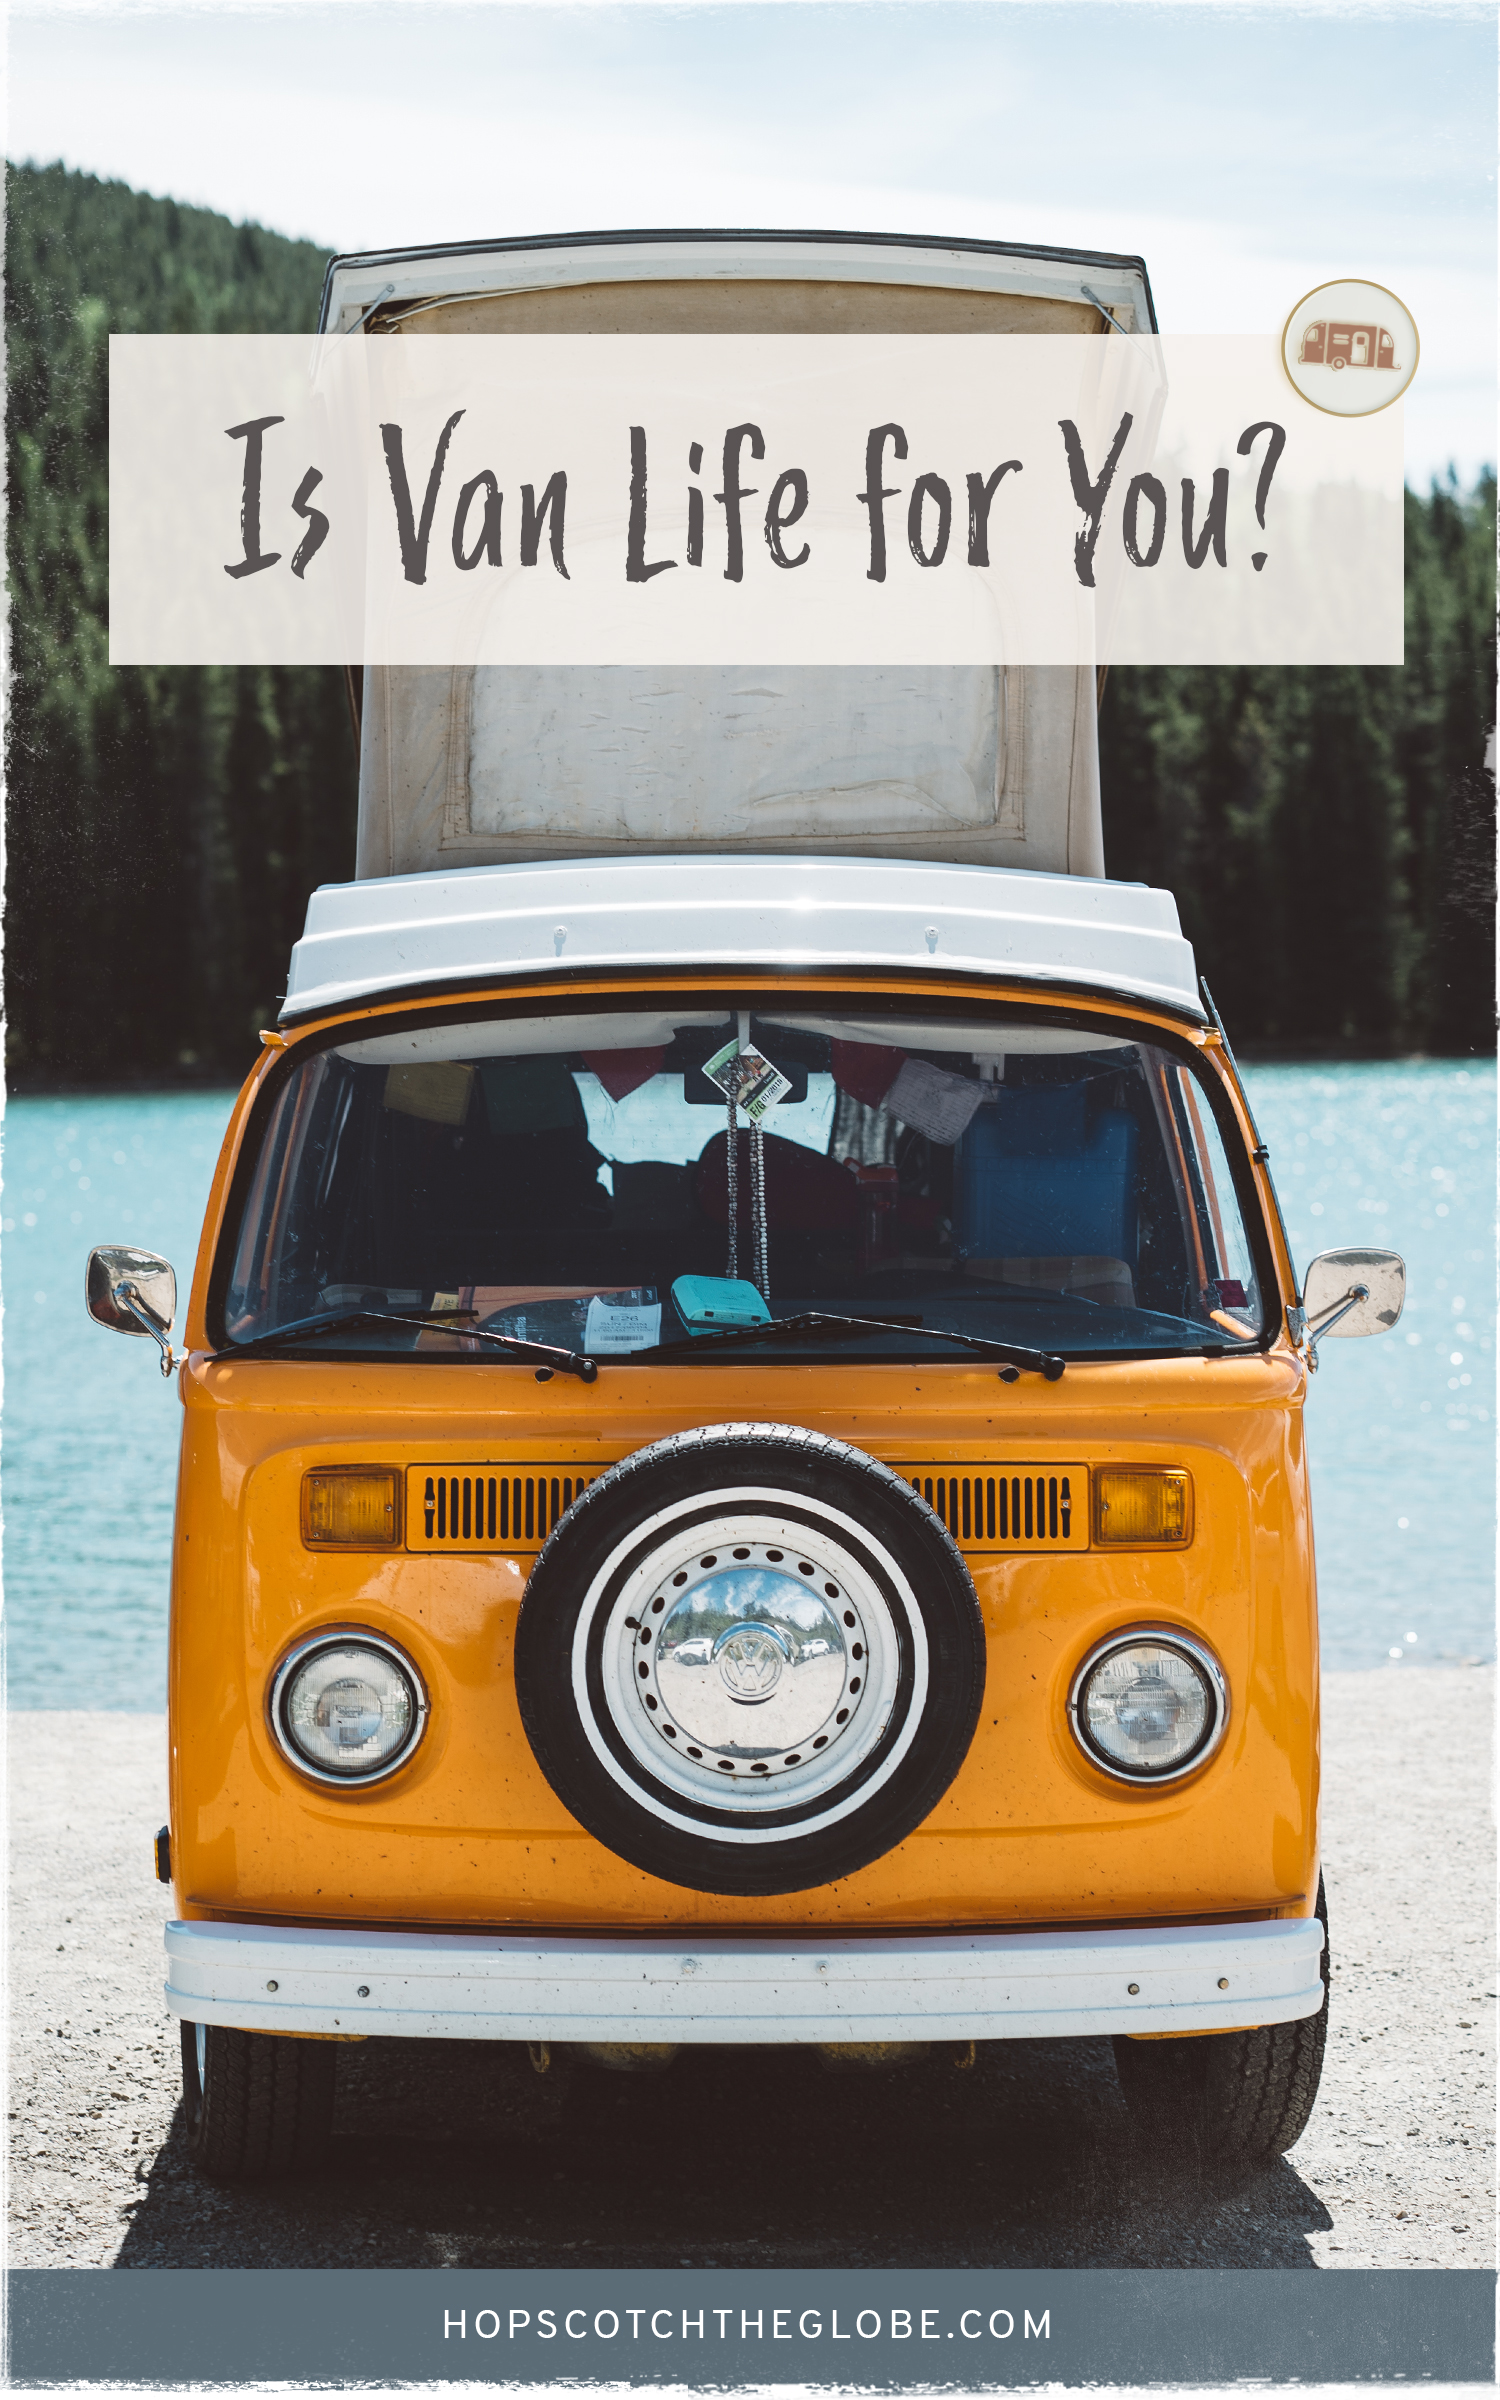 5 Tips For Living VanLife, How to Start #vanlife